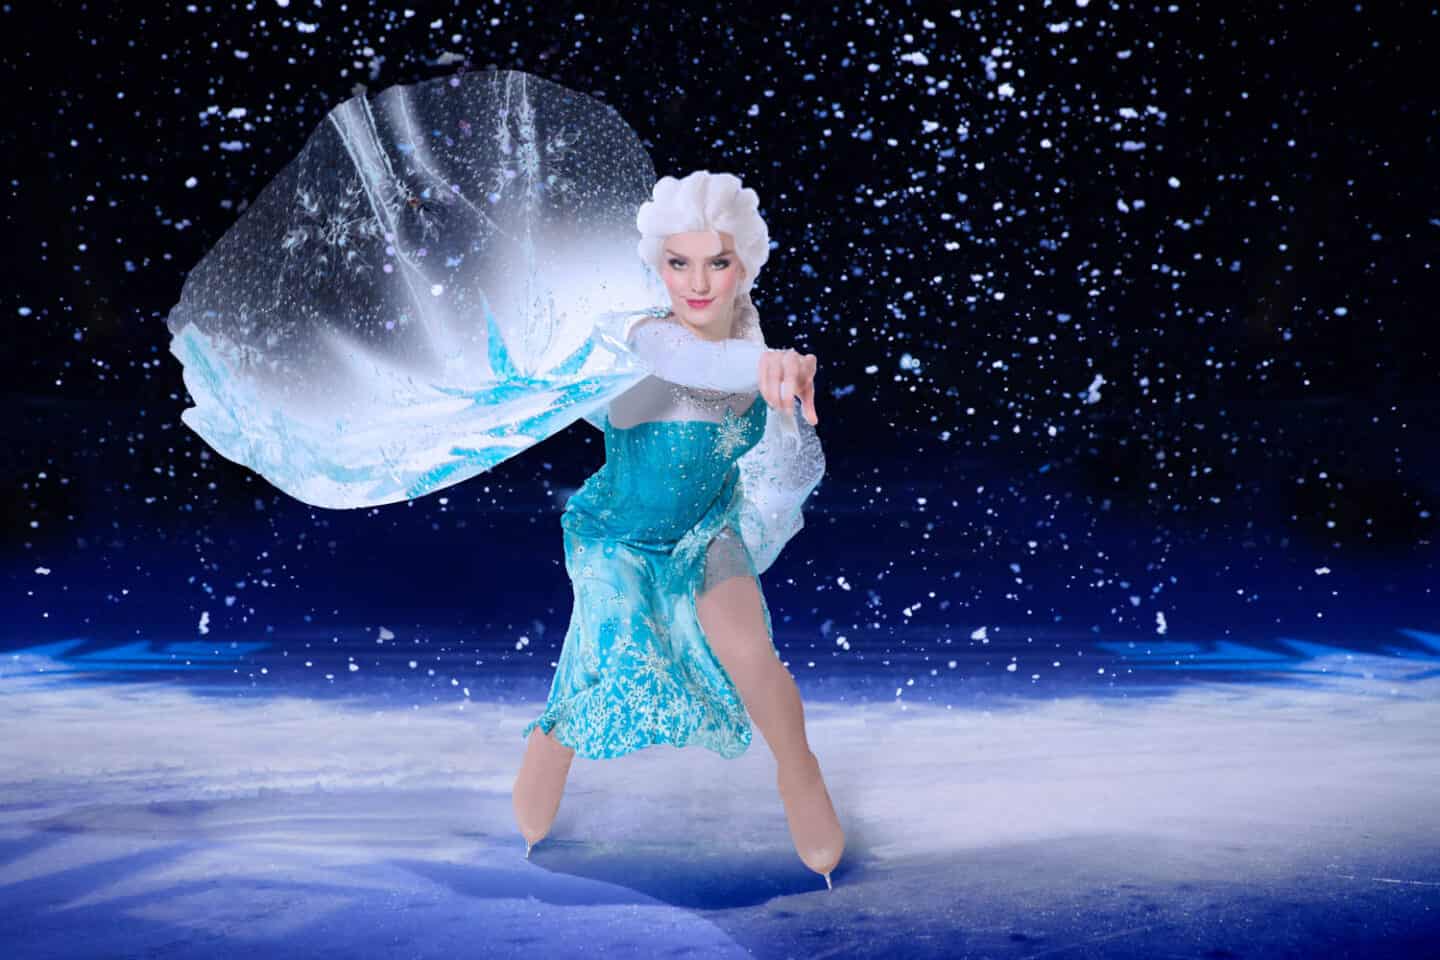 Elsa from Frozen dancing in Disney on Ice Find Your Hero